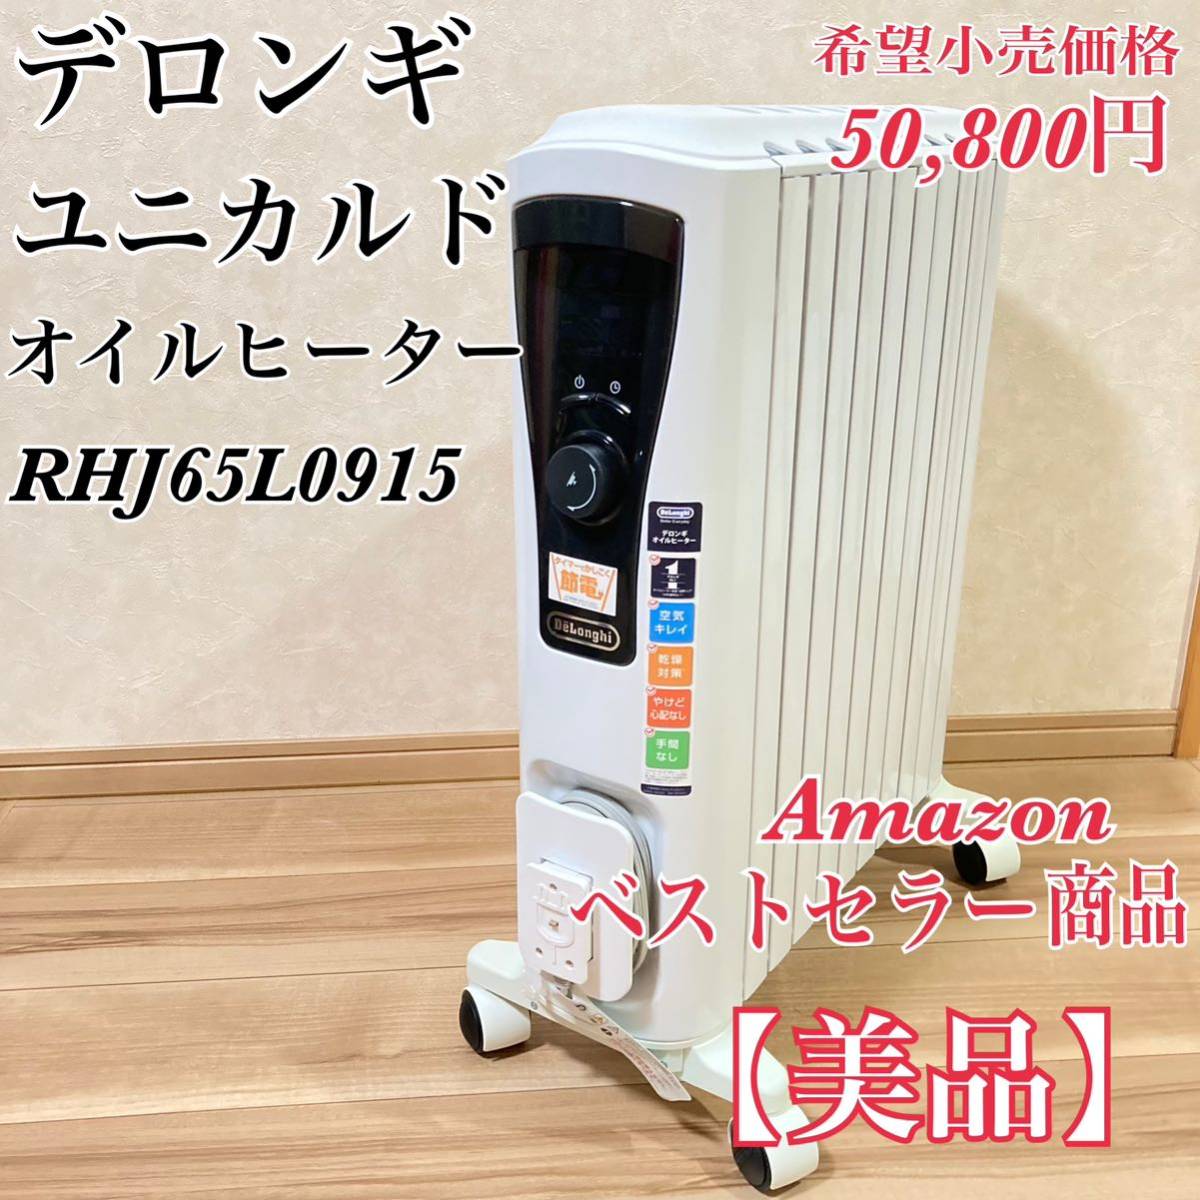 【美品】デロンギ ユニカルド オイルヒーター RHJ65L0915 10~13畳用